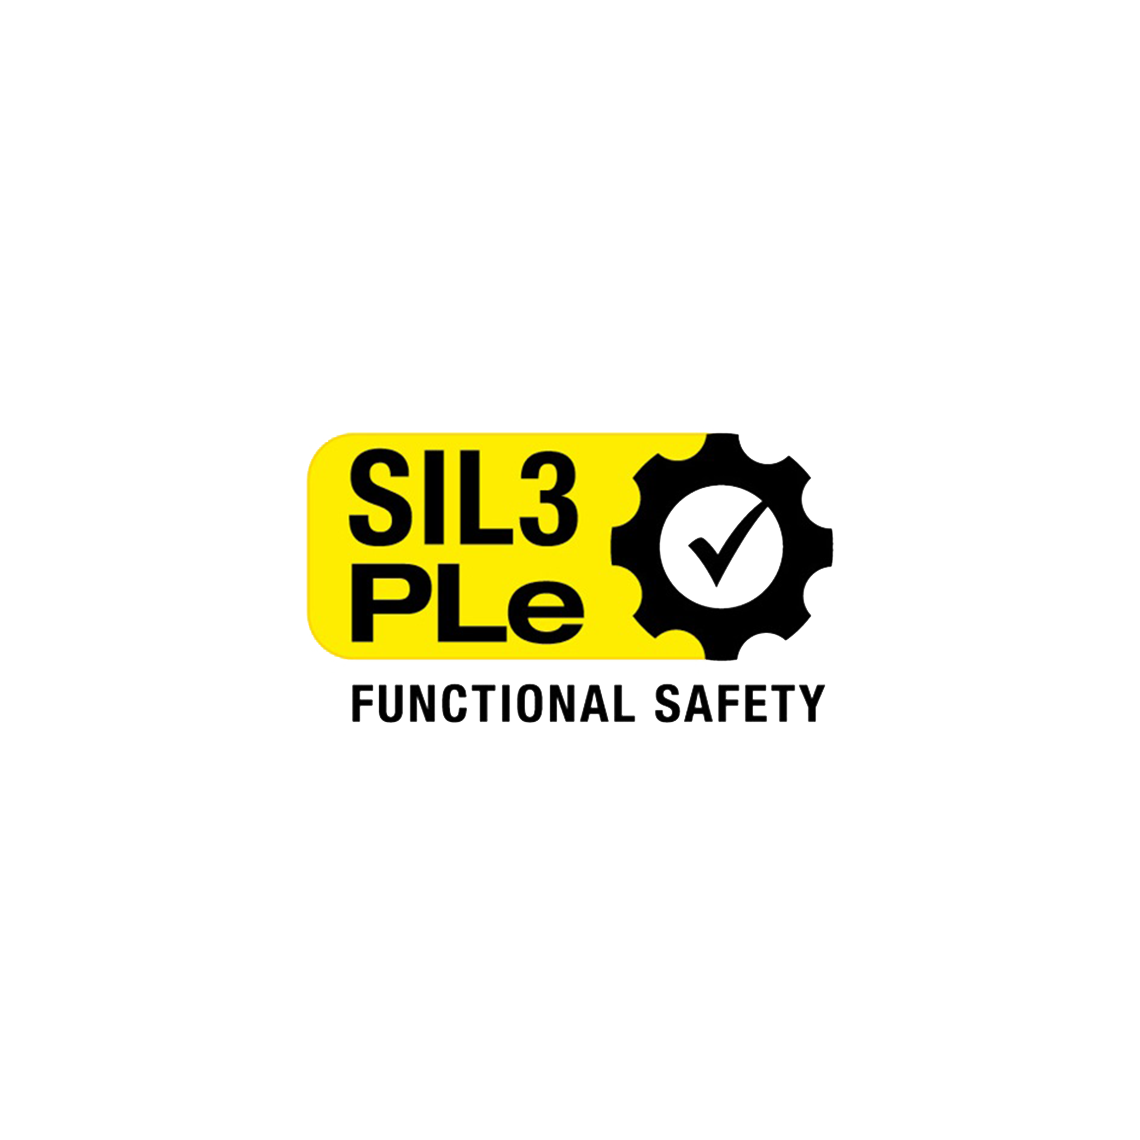 Das Logo für SIL3Ple funktionelle Sicherheit